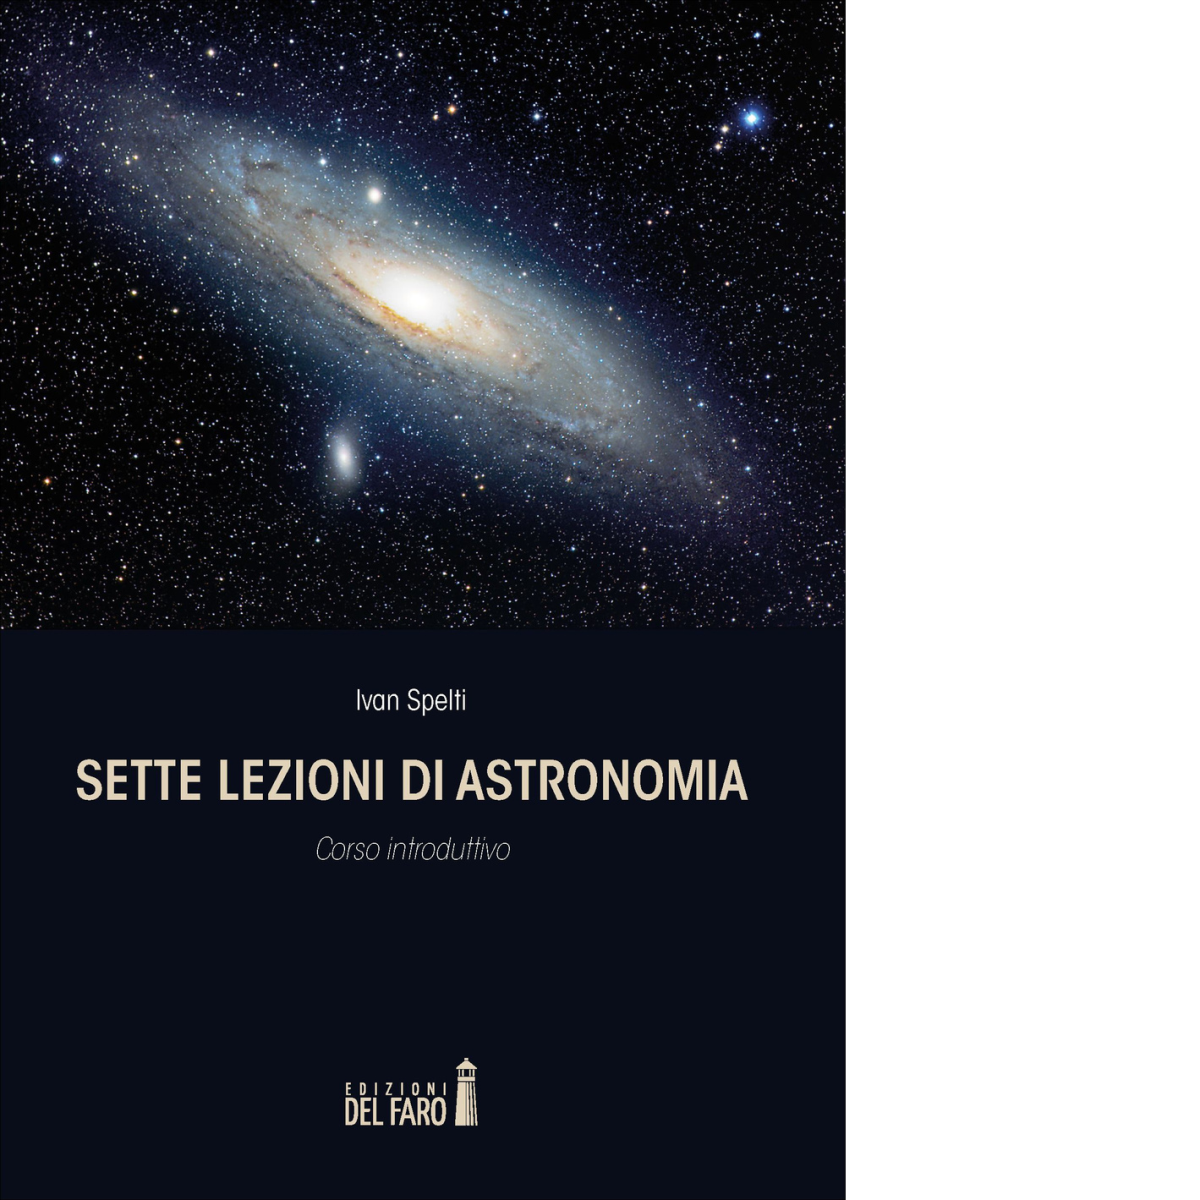 Sette lezioni di astronomia -  Ivan Spelti - Edizioni Del Faro, 2022